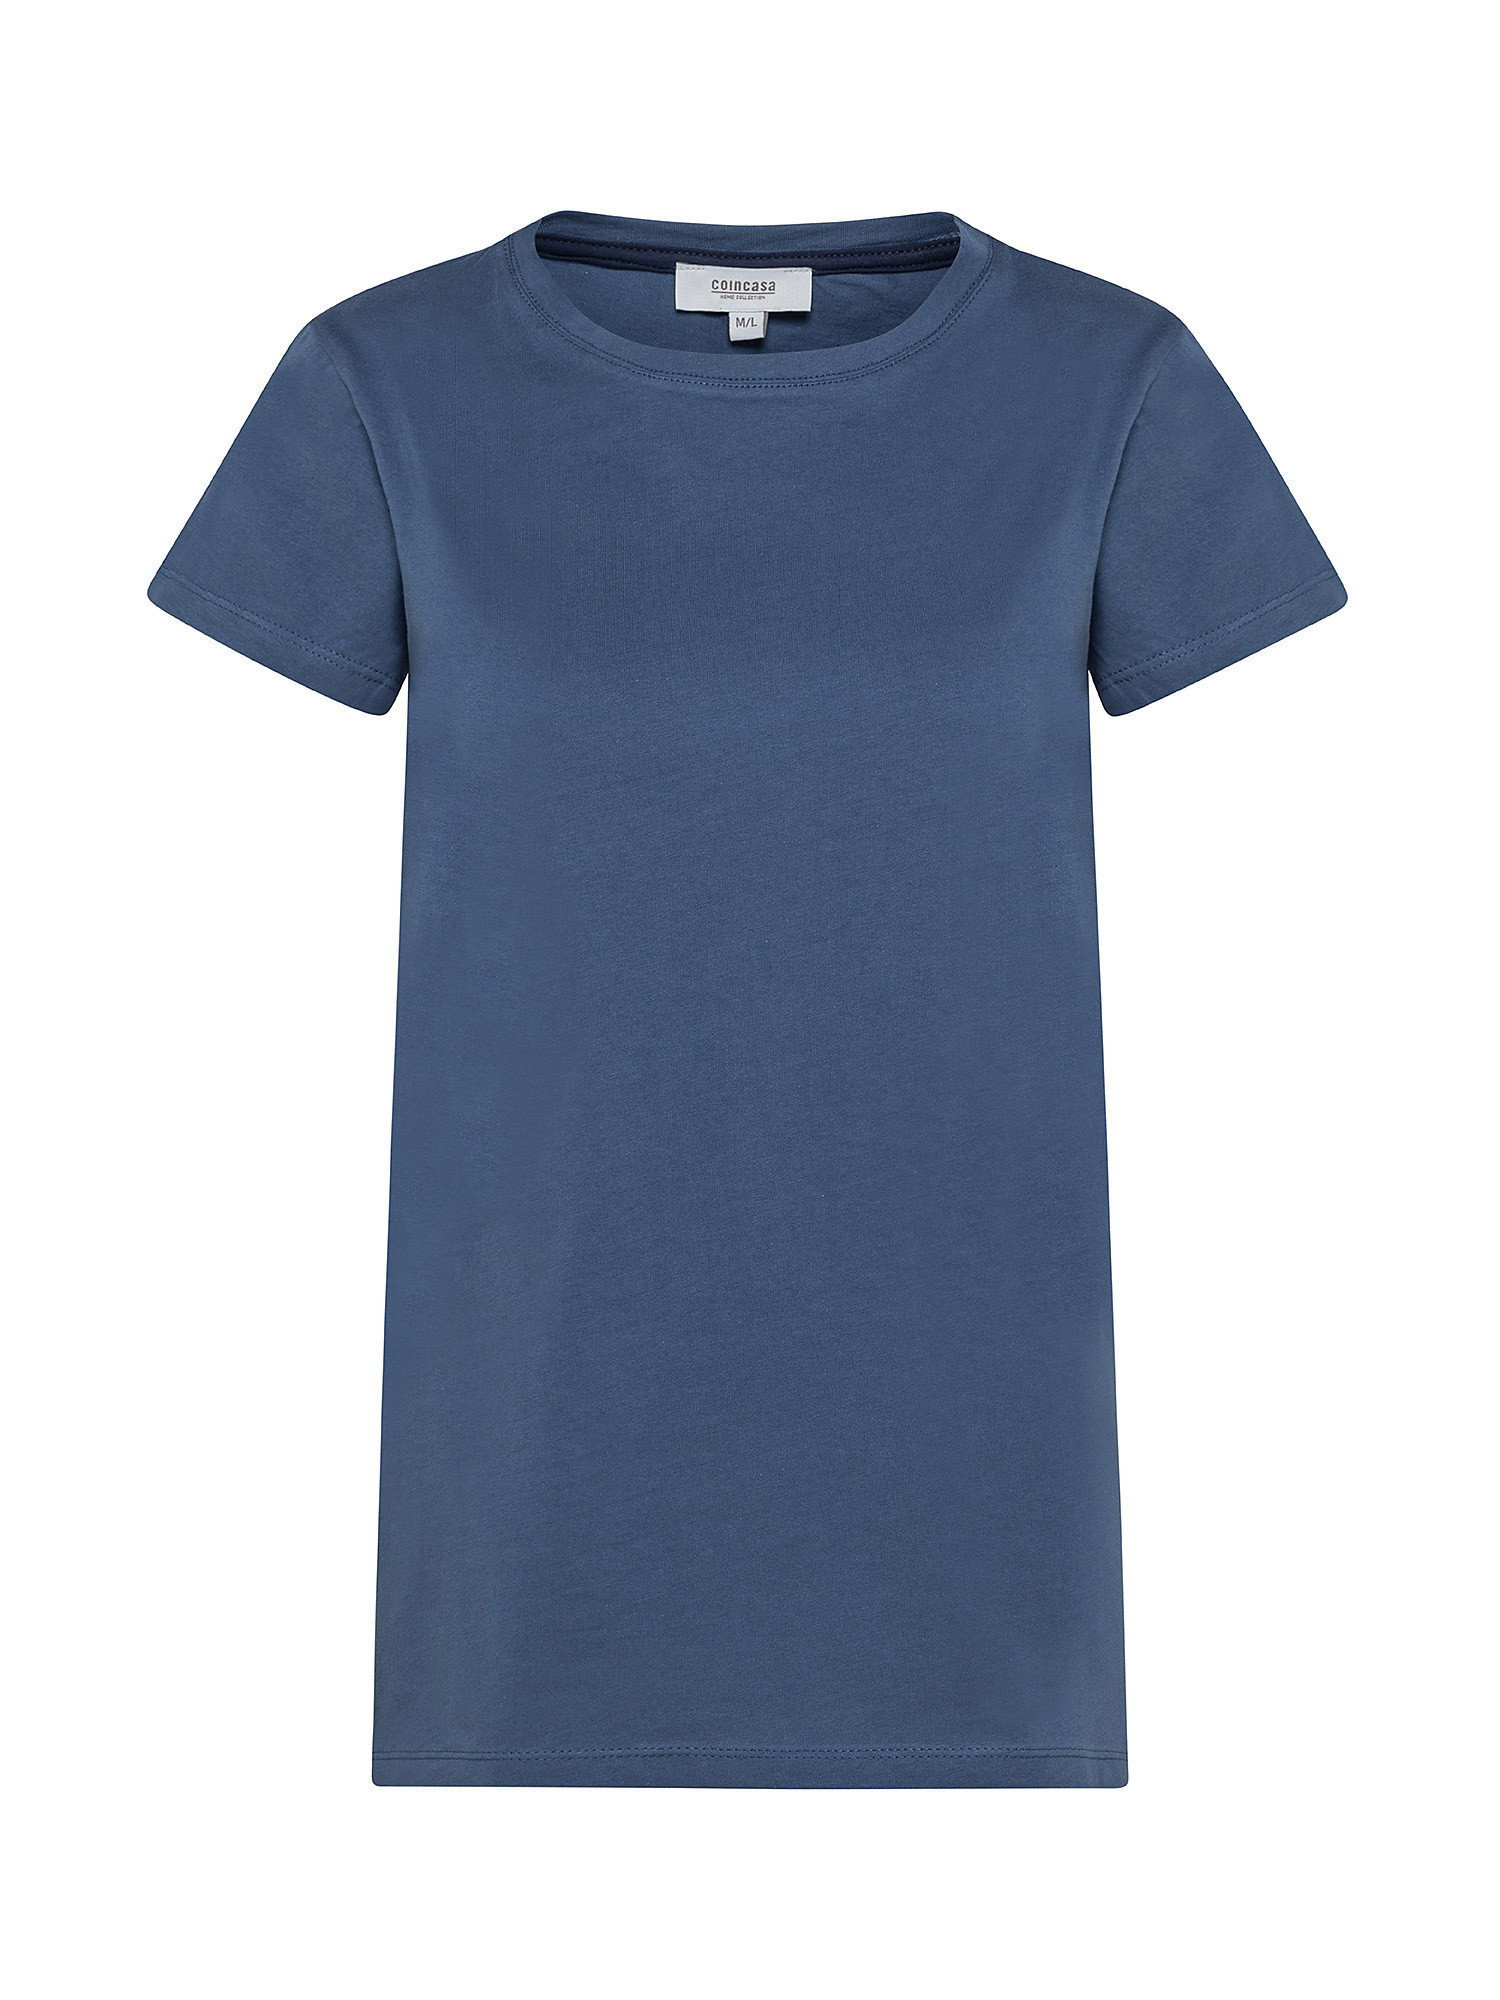 T-shirt basic puro cotone tinta unita, Blu, large image number 0